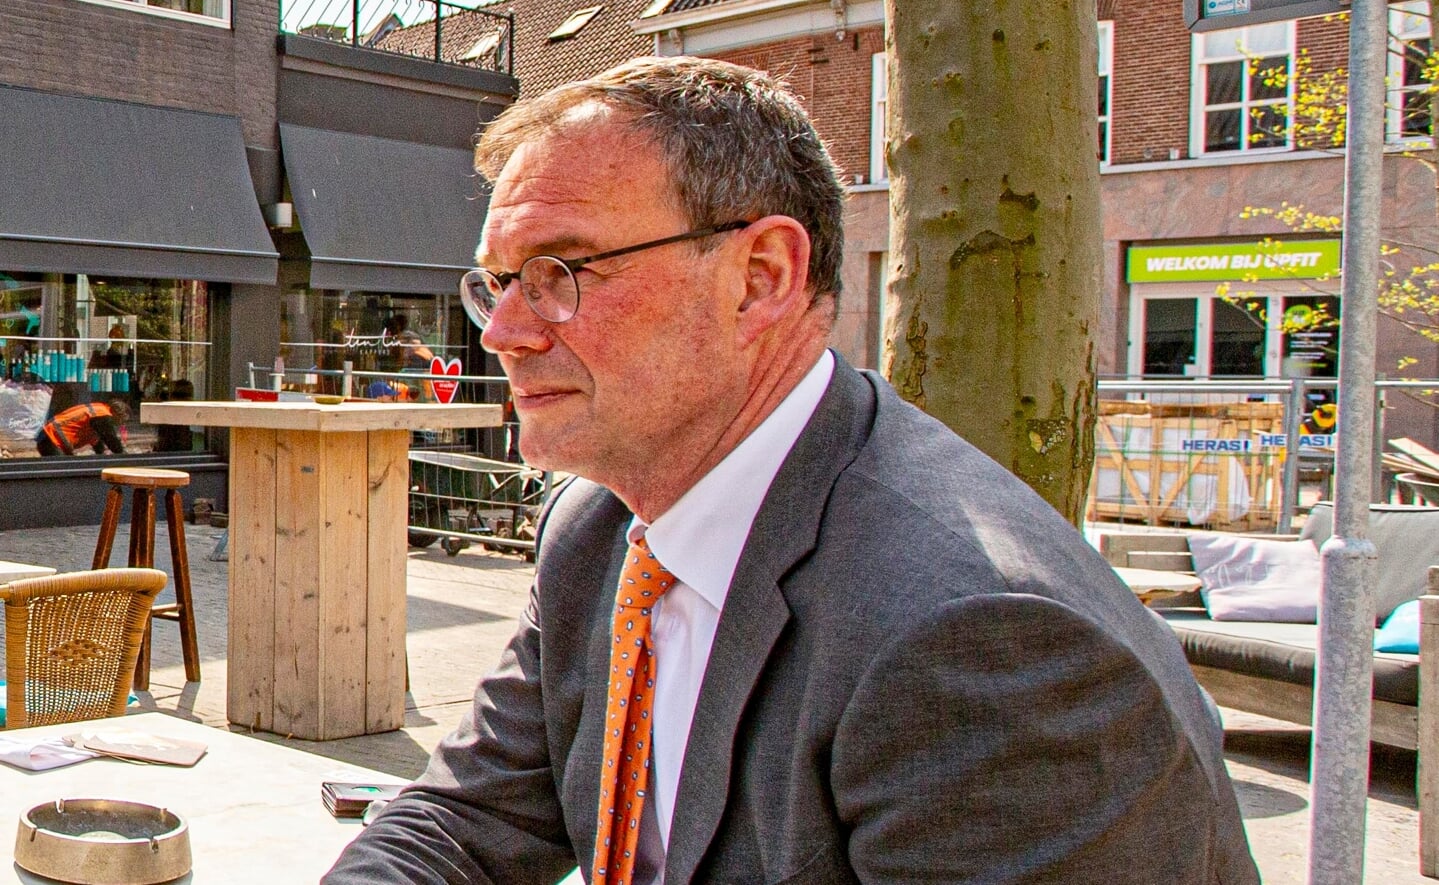 Tijdens de Boxtelse kermis deden zich geen incidenten voor, meldt burgemeester Ronald van Meygaarden. (Foto: Bas van den Biggelaar, april 2021). 